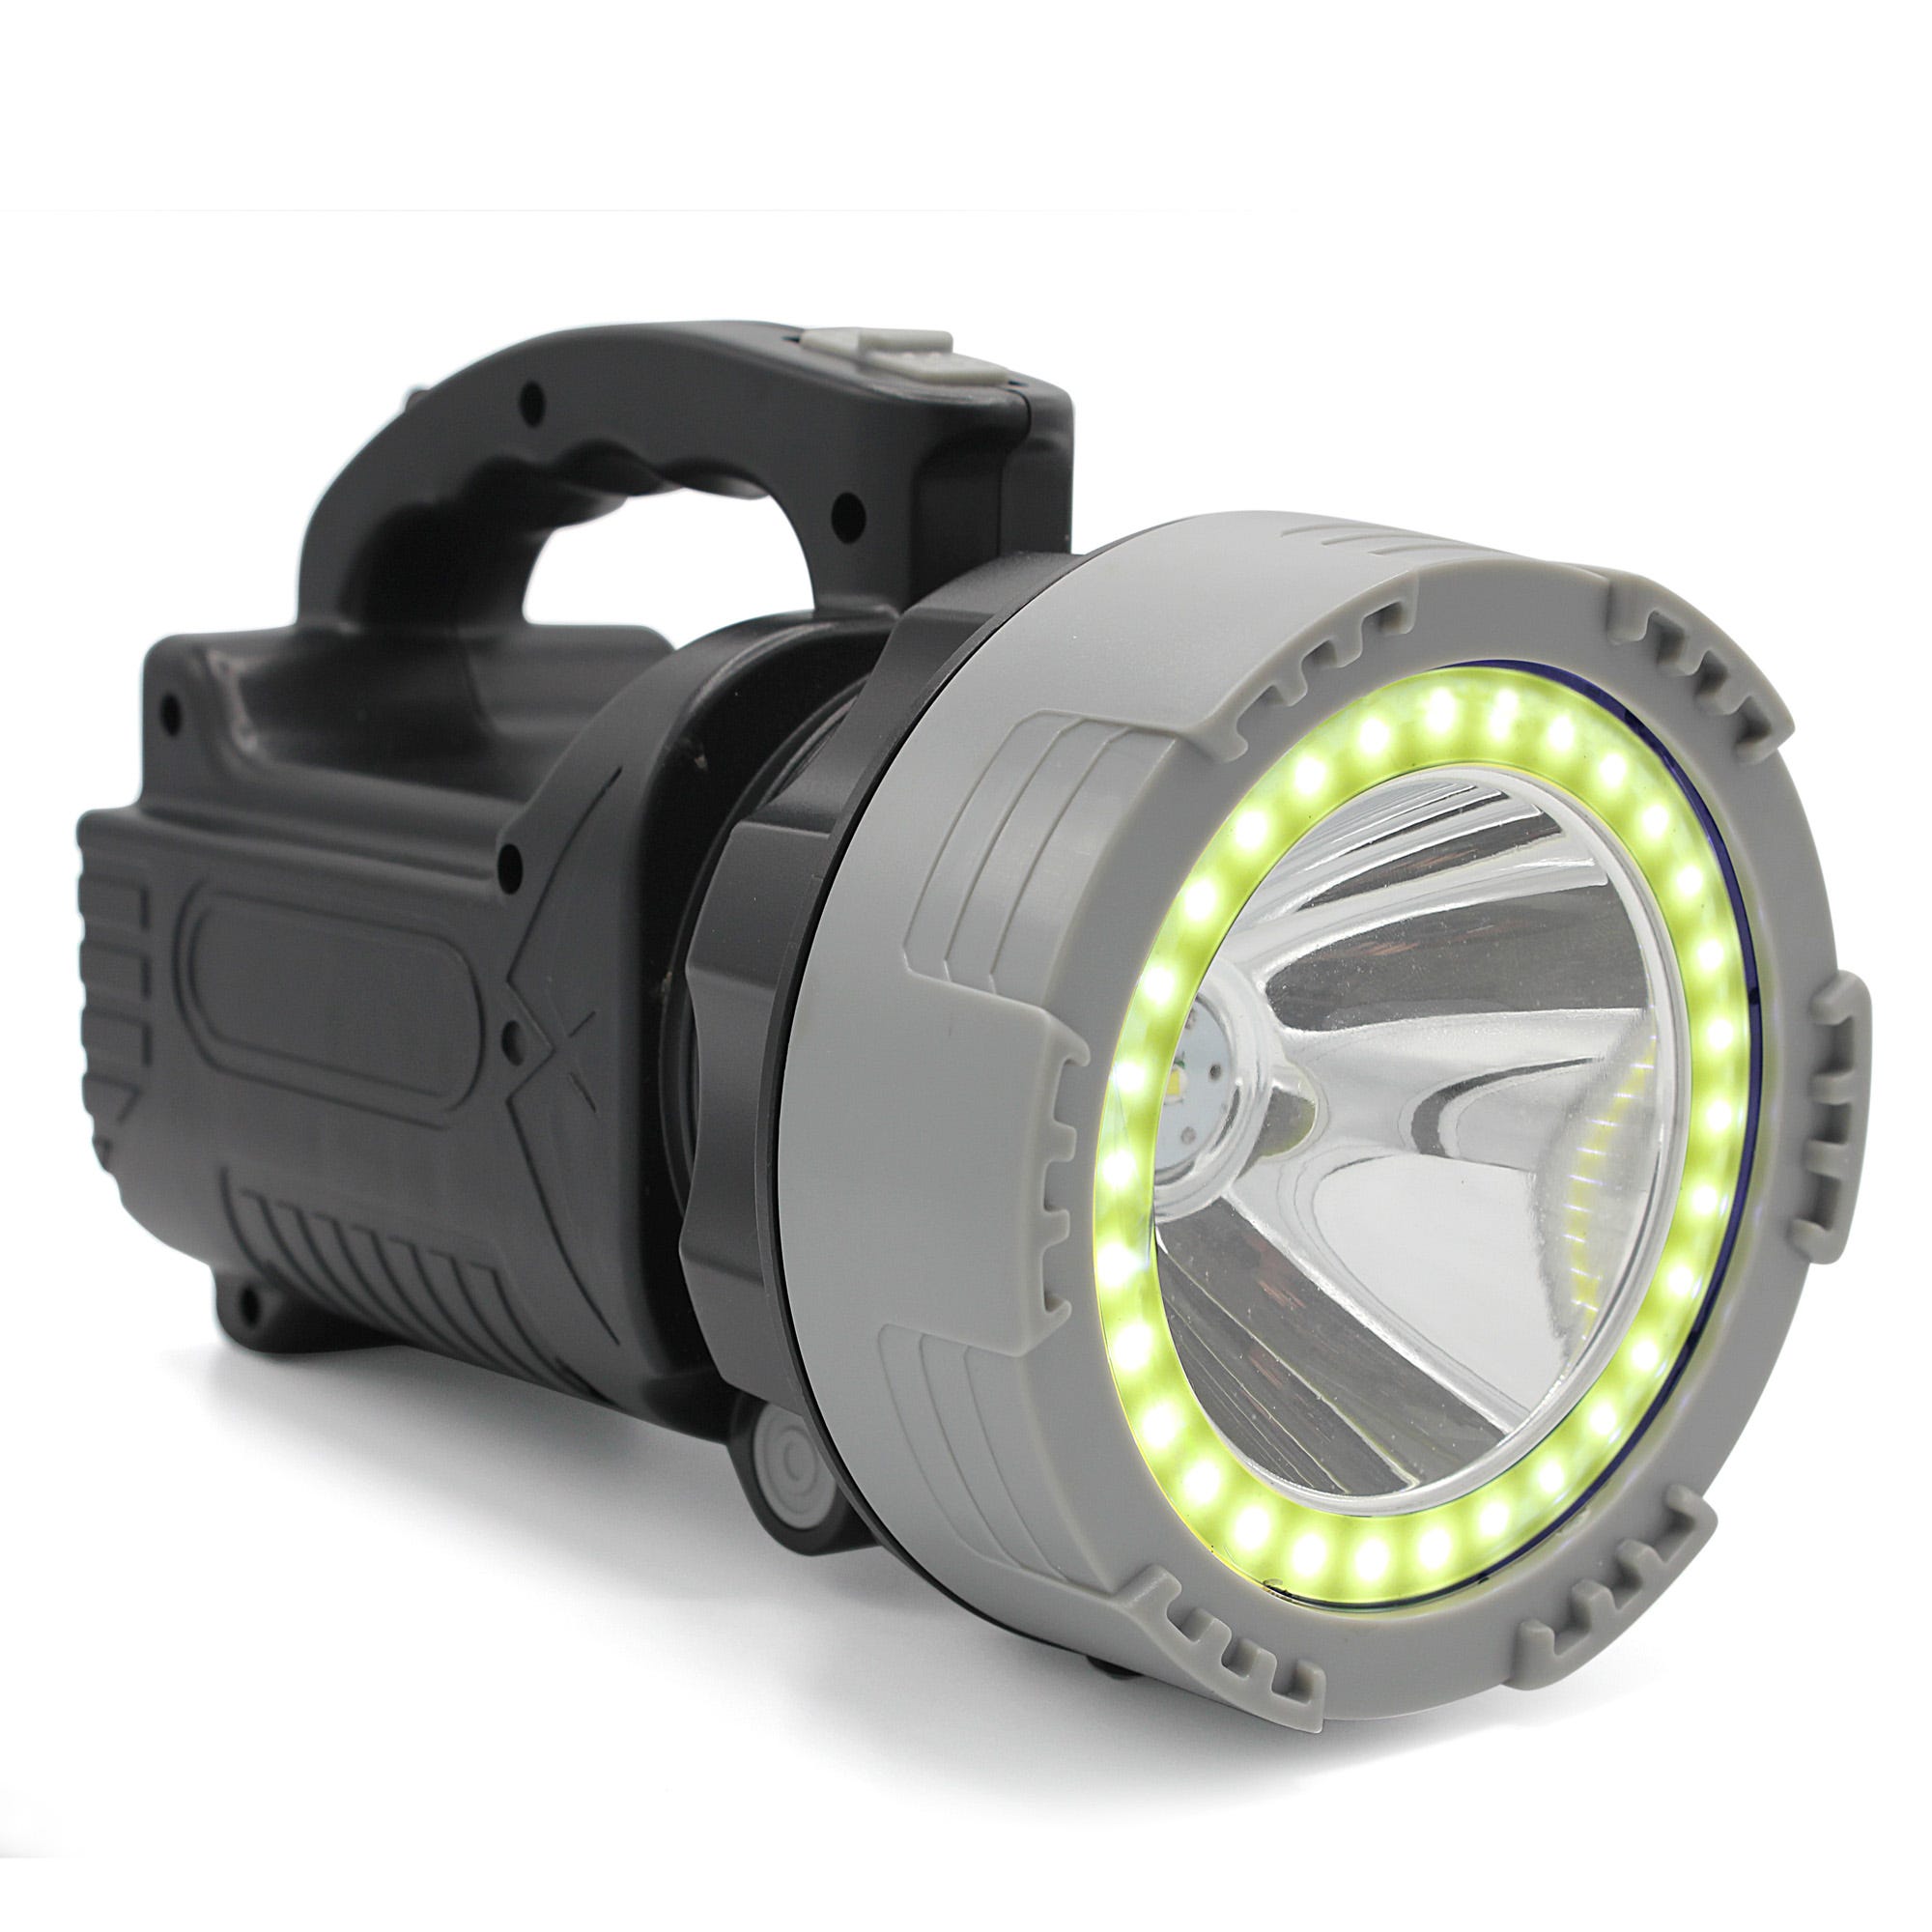 FISHTEC Lampe frontale LED Rechargeable Puissante 230 - 5 Modes d